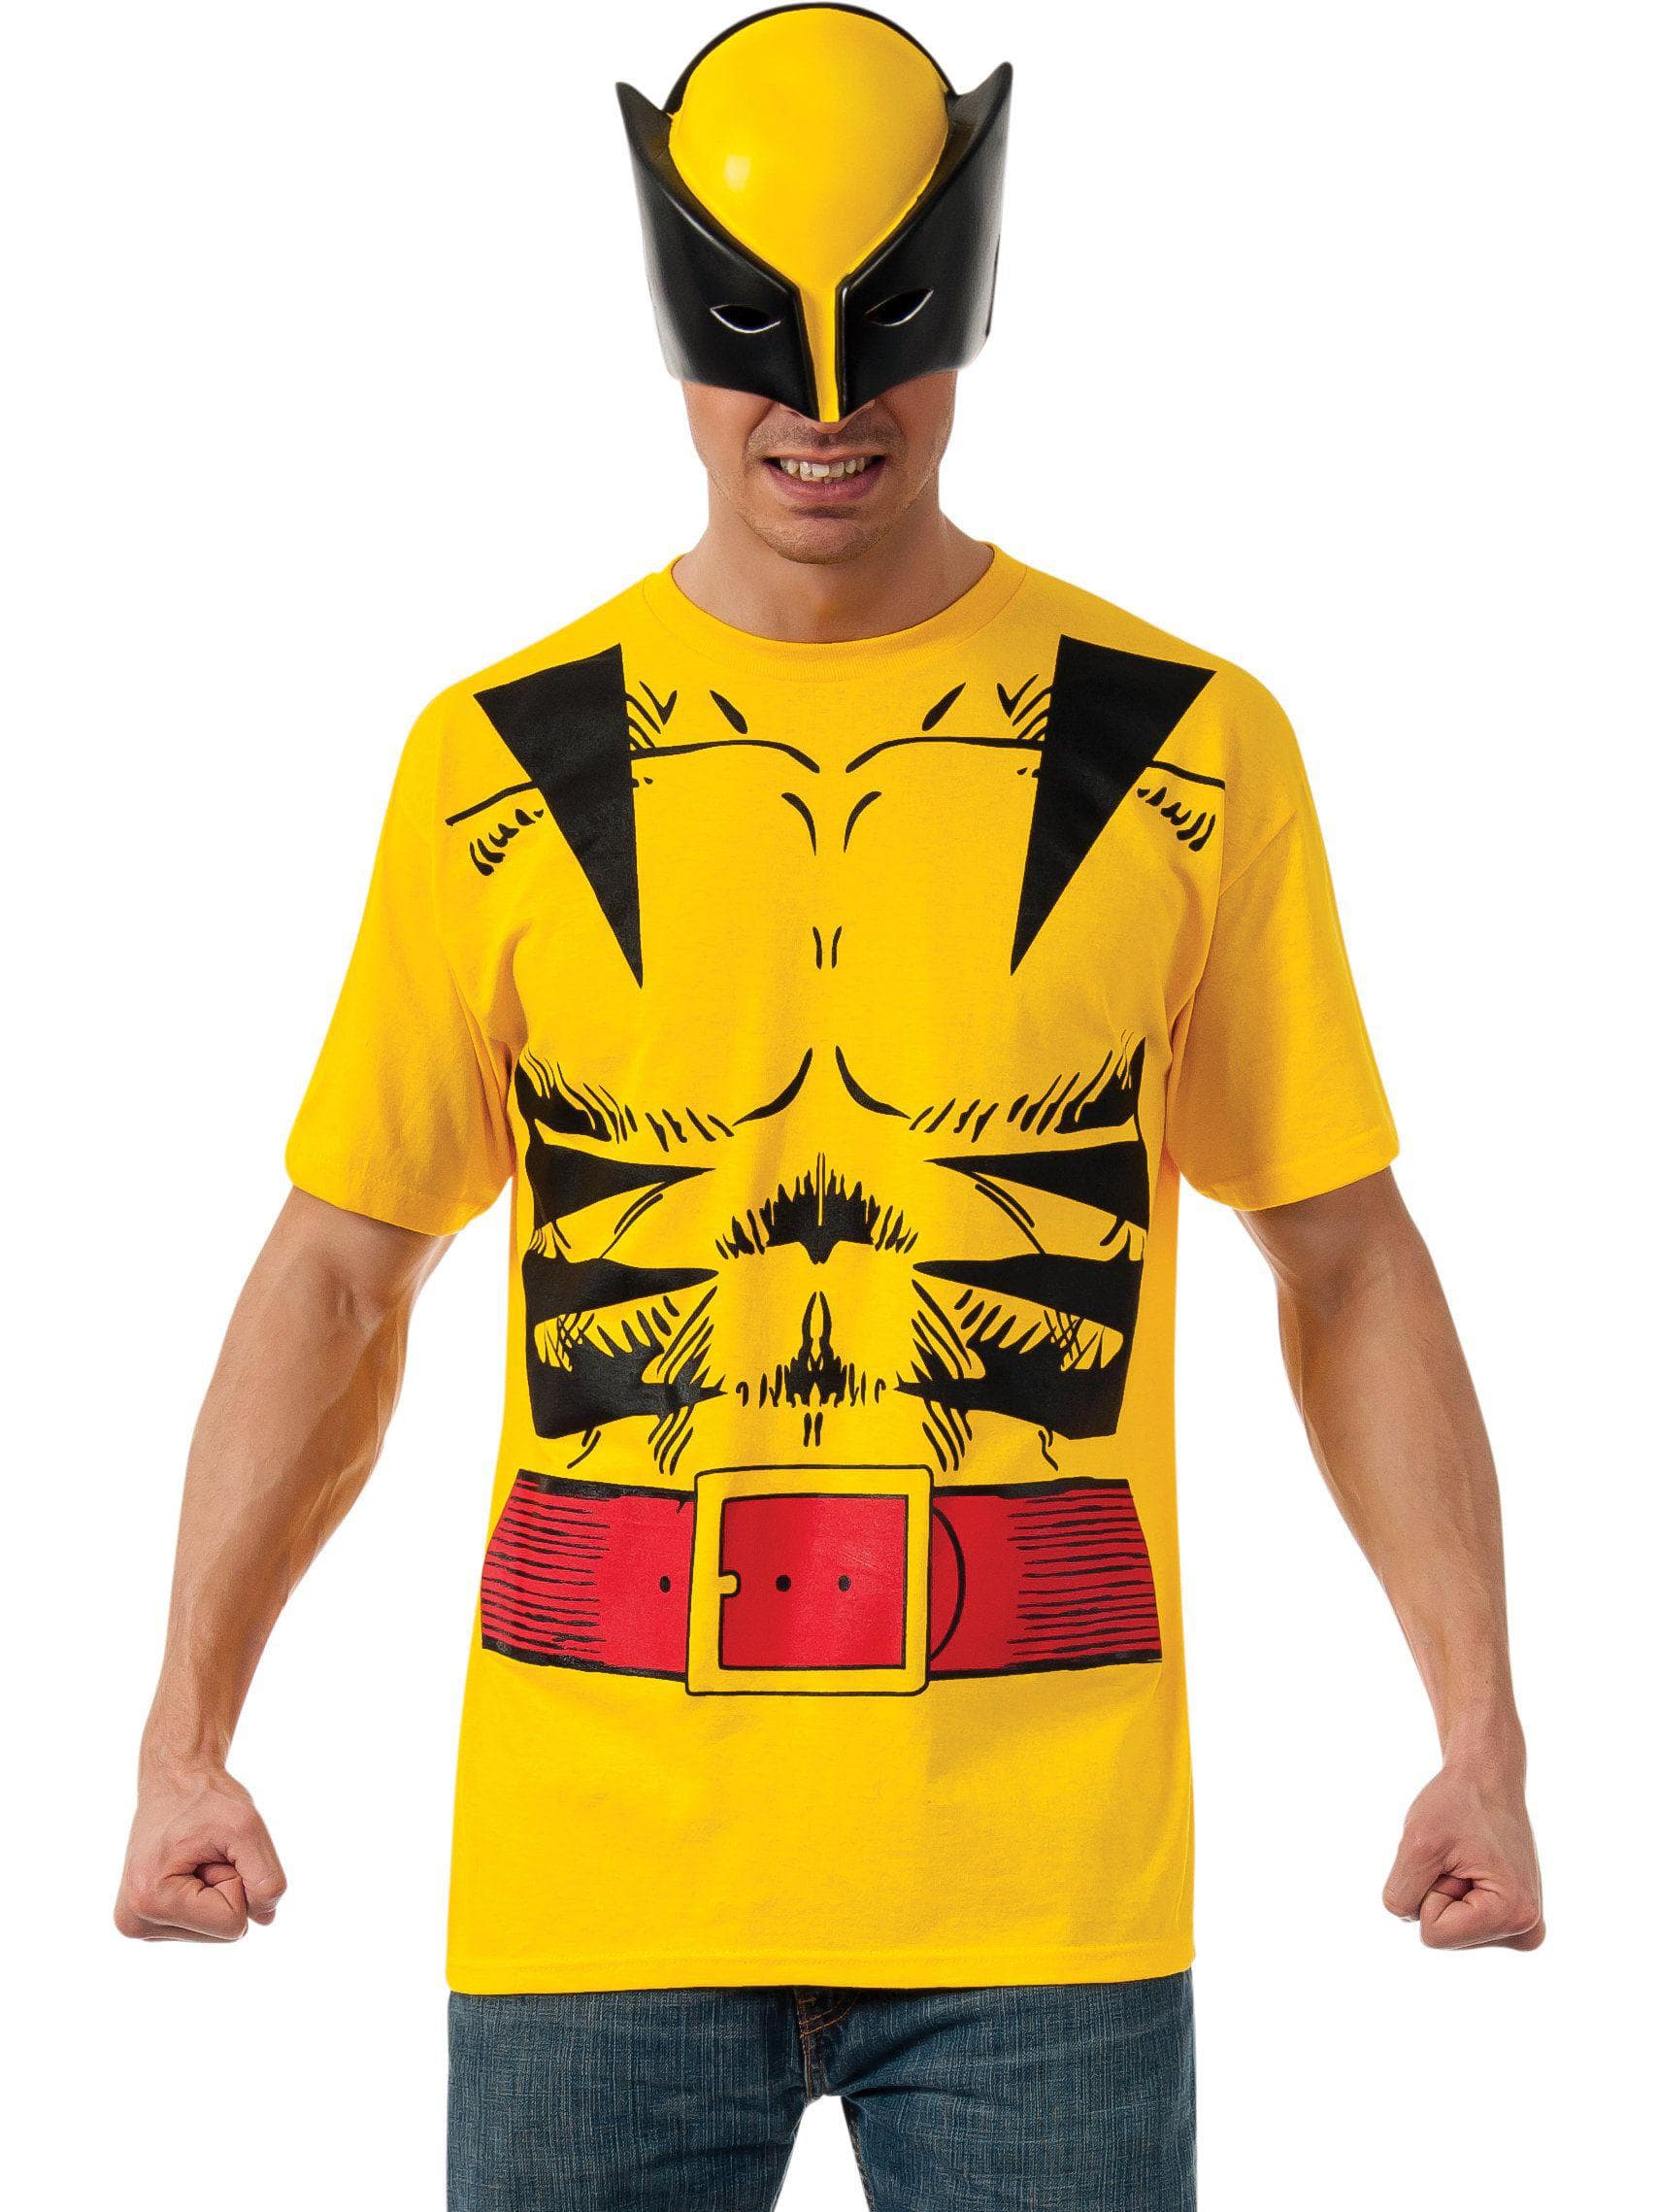 Adult X-Men Wolverine Costume - costumes.com